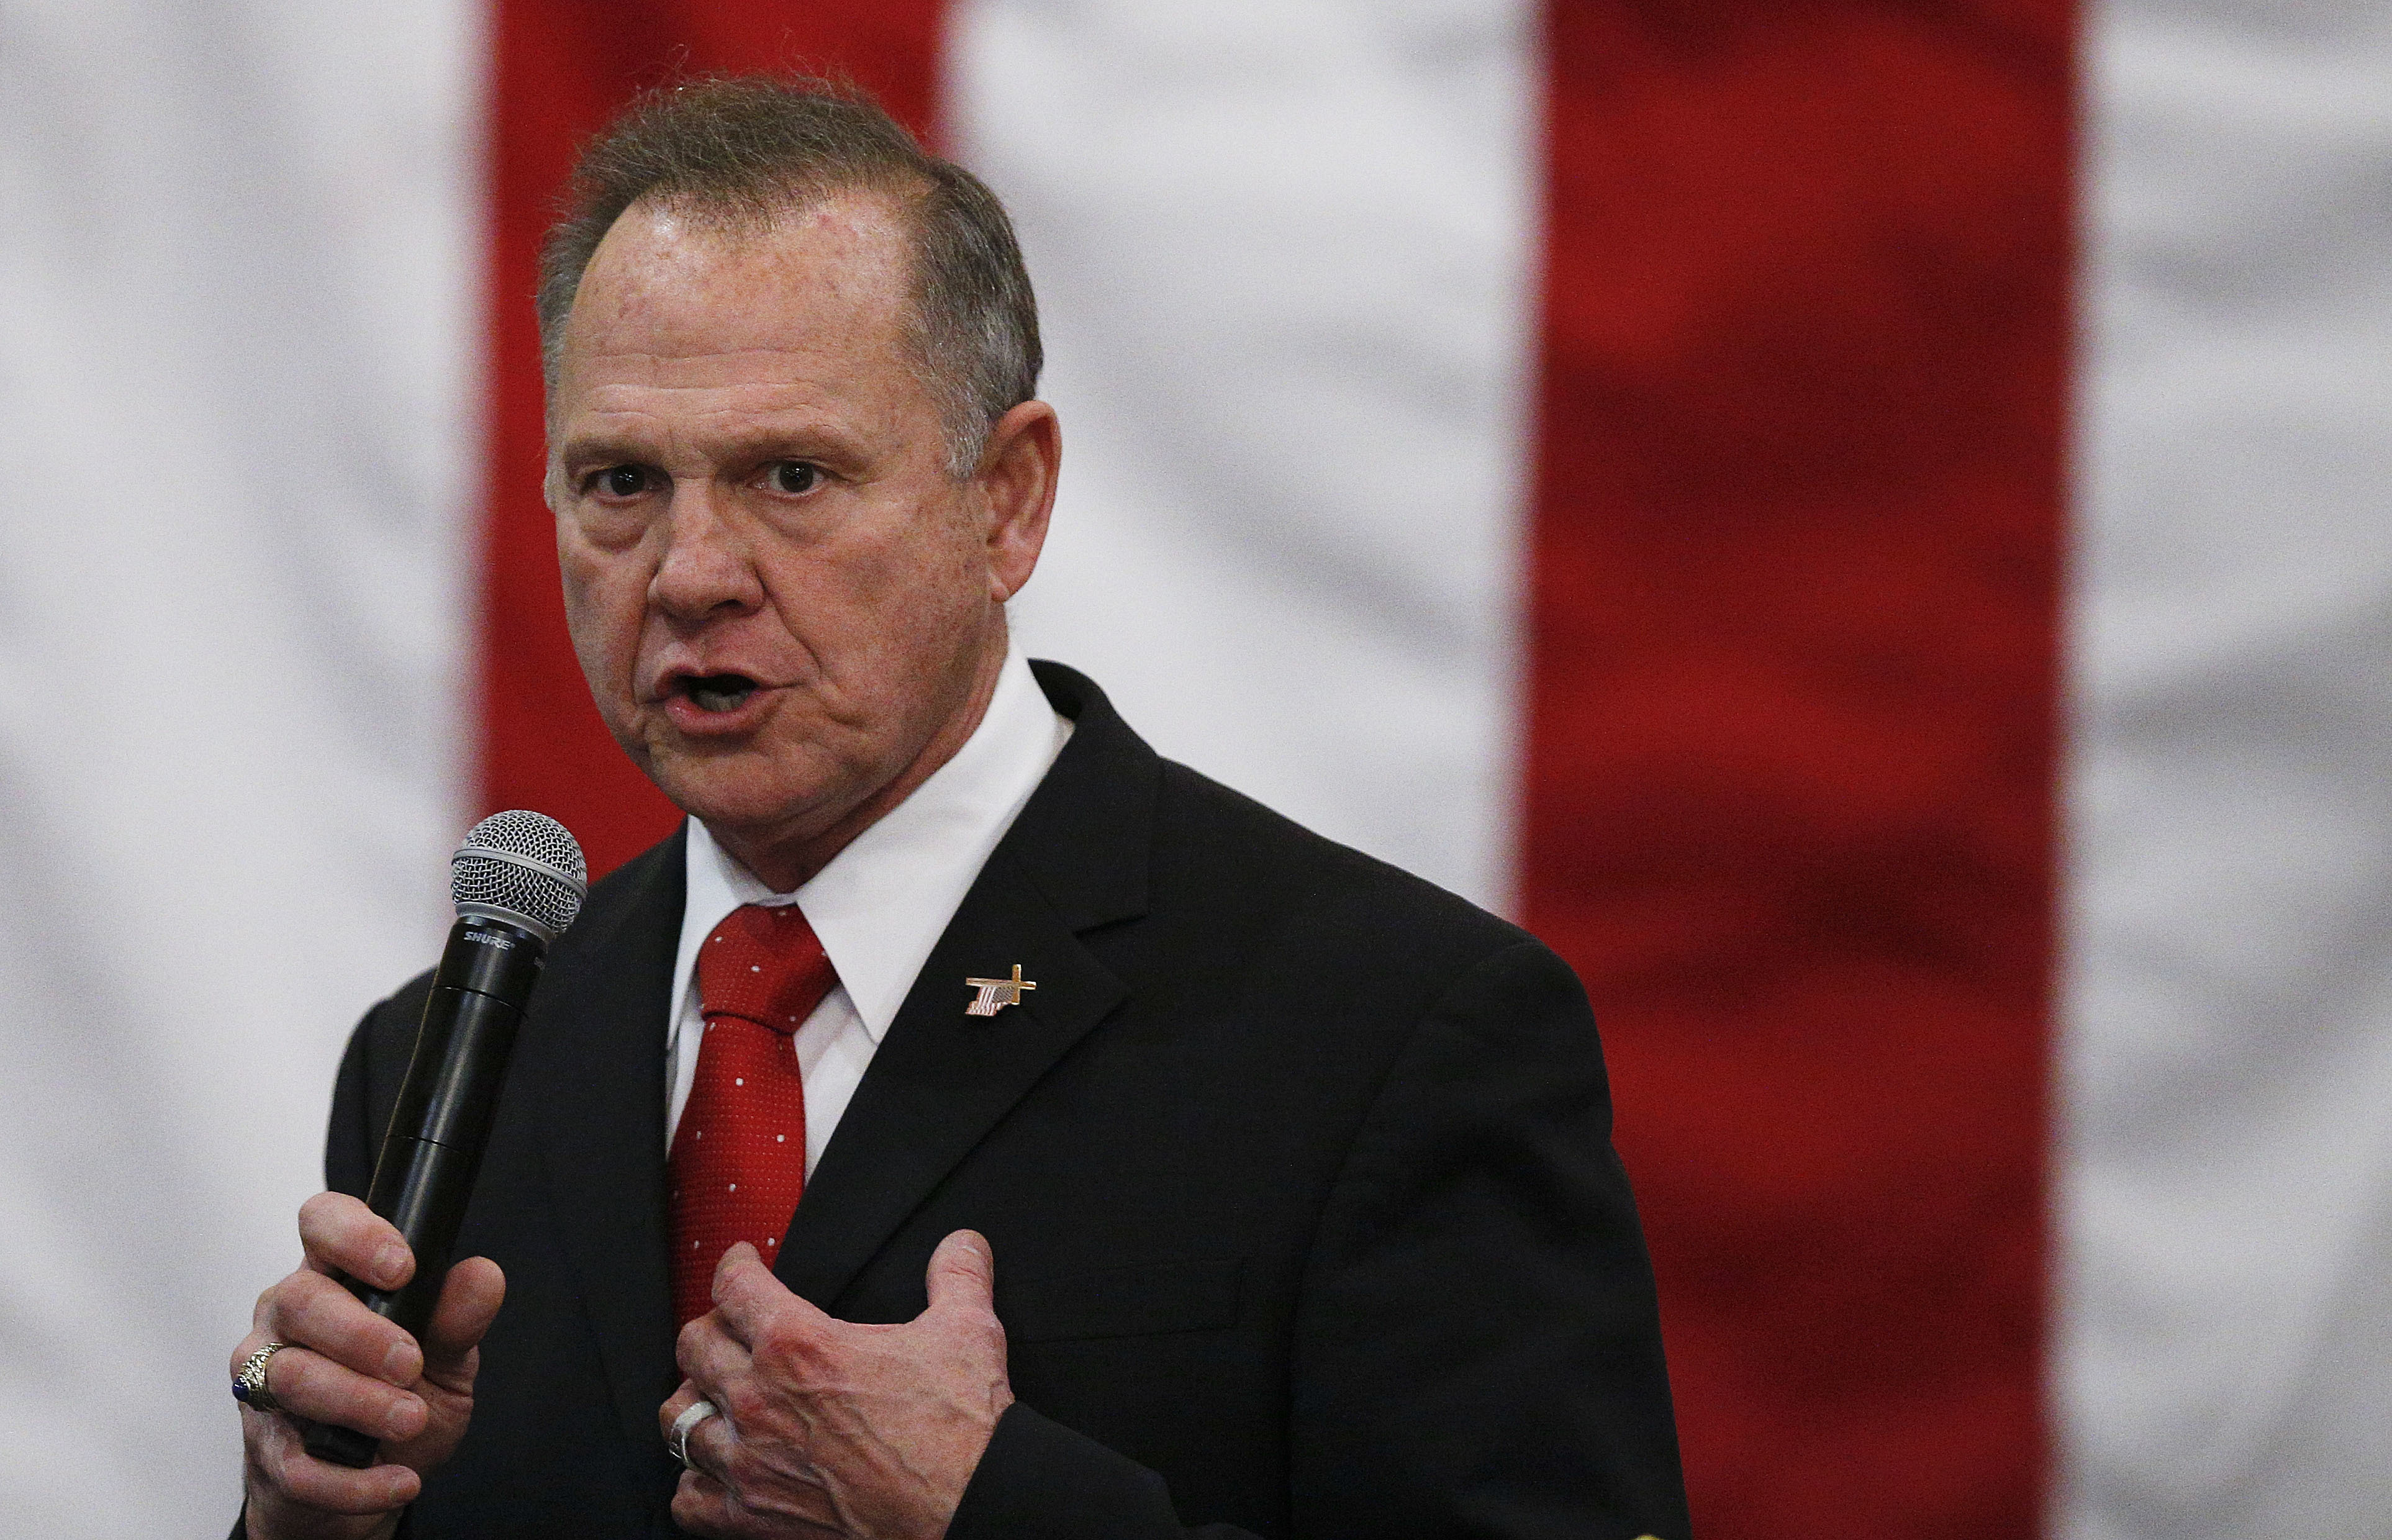 Republicano Moore impugna elección en Alabama; acusa "fraude electoral"